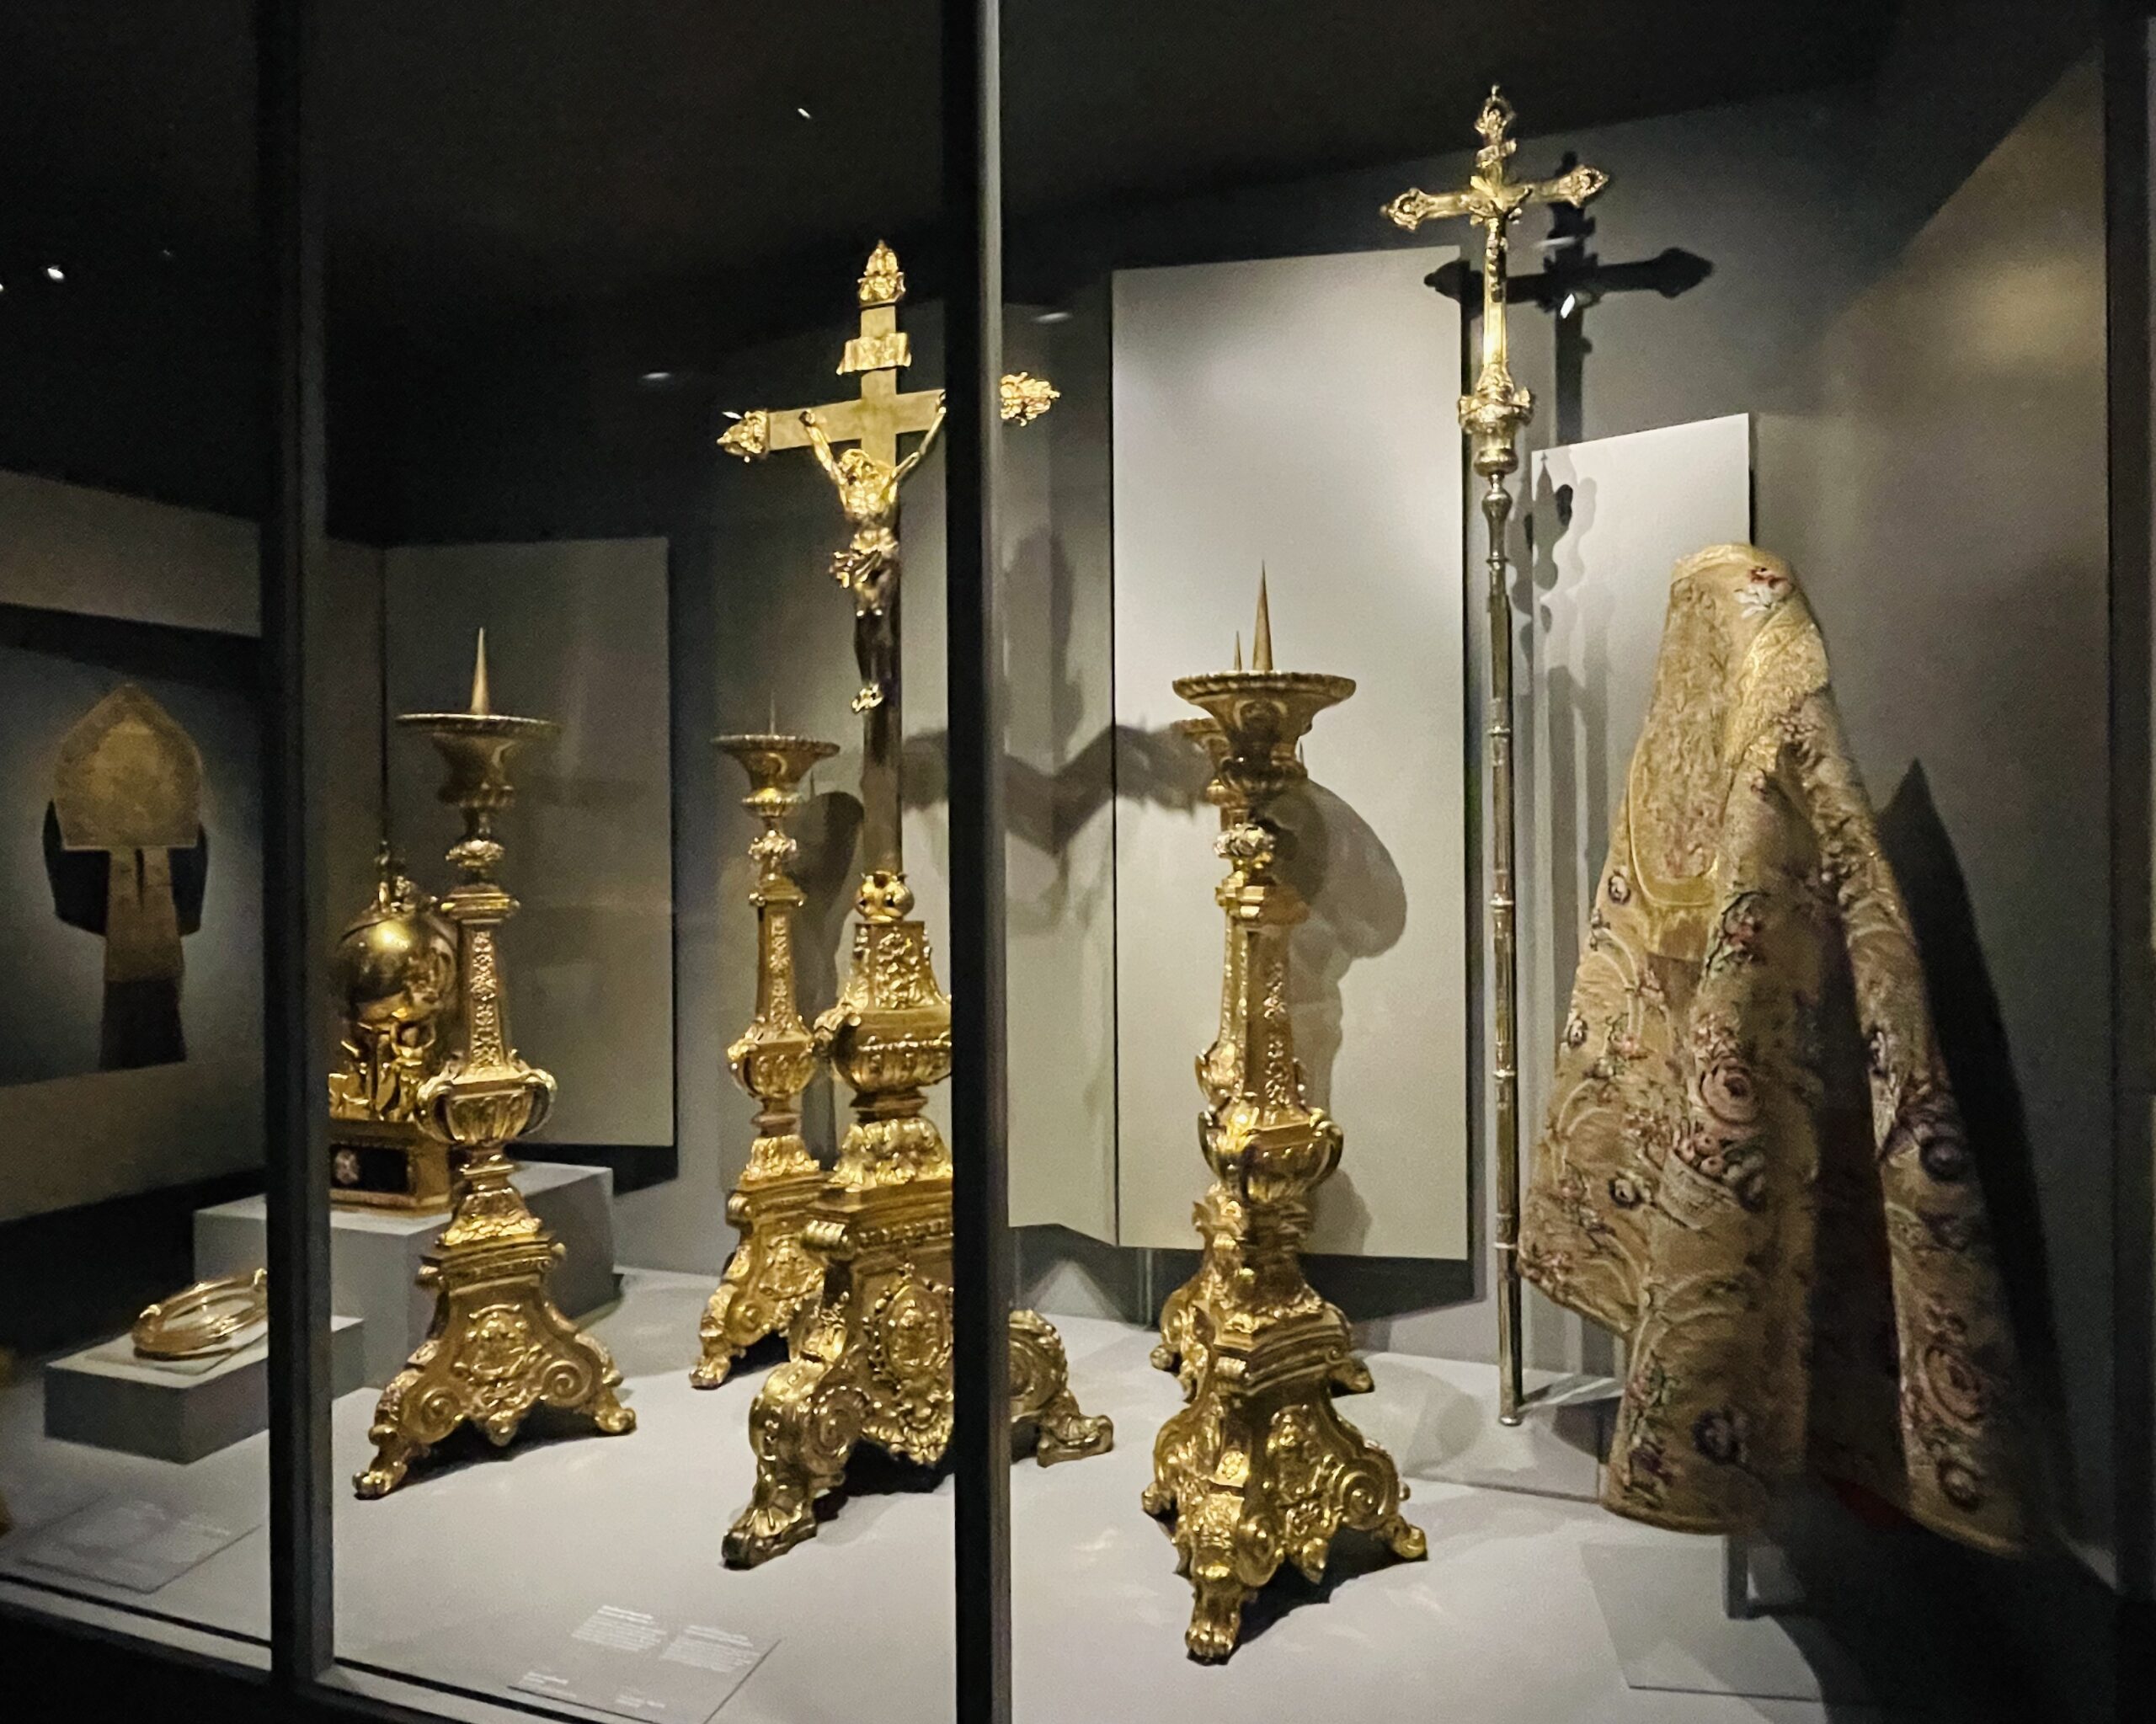 W Luwrze trwa wystawa poświęcona historii skarbca paryskiej katedry, od średniowiecza, poprzez zniszczenia podczas rewolucji francuskiej, po przywrócenie mu świetności przez Viollet-le-Duca w XIX wieku. 